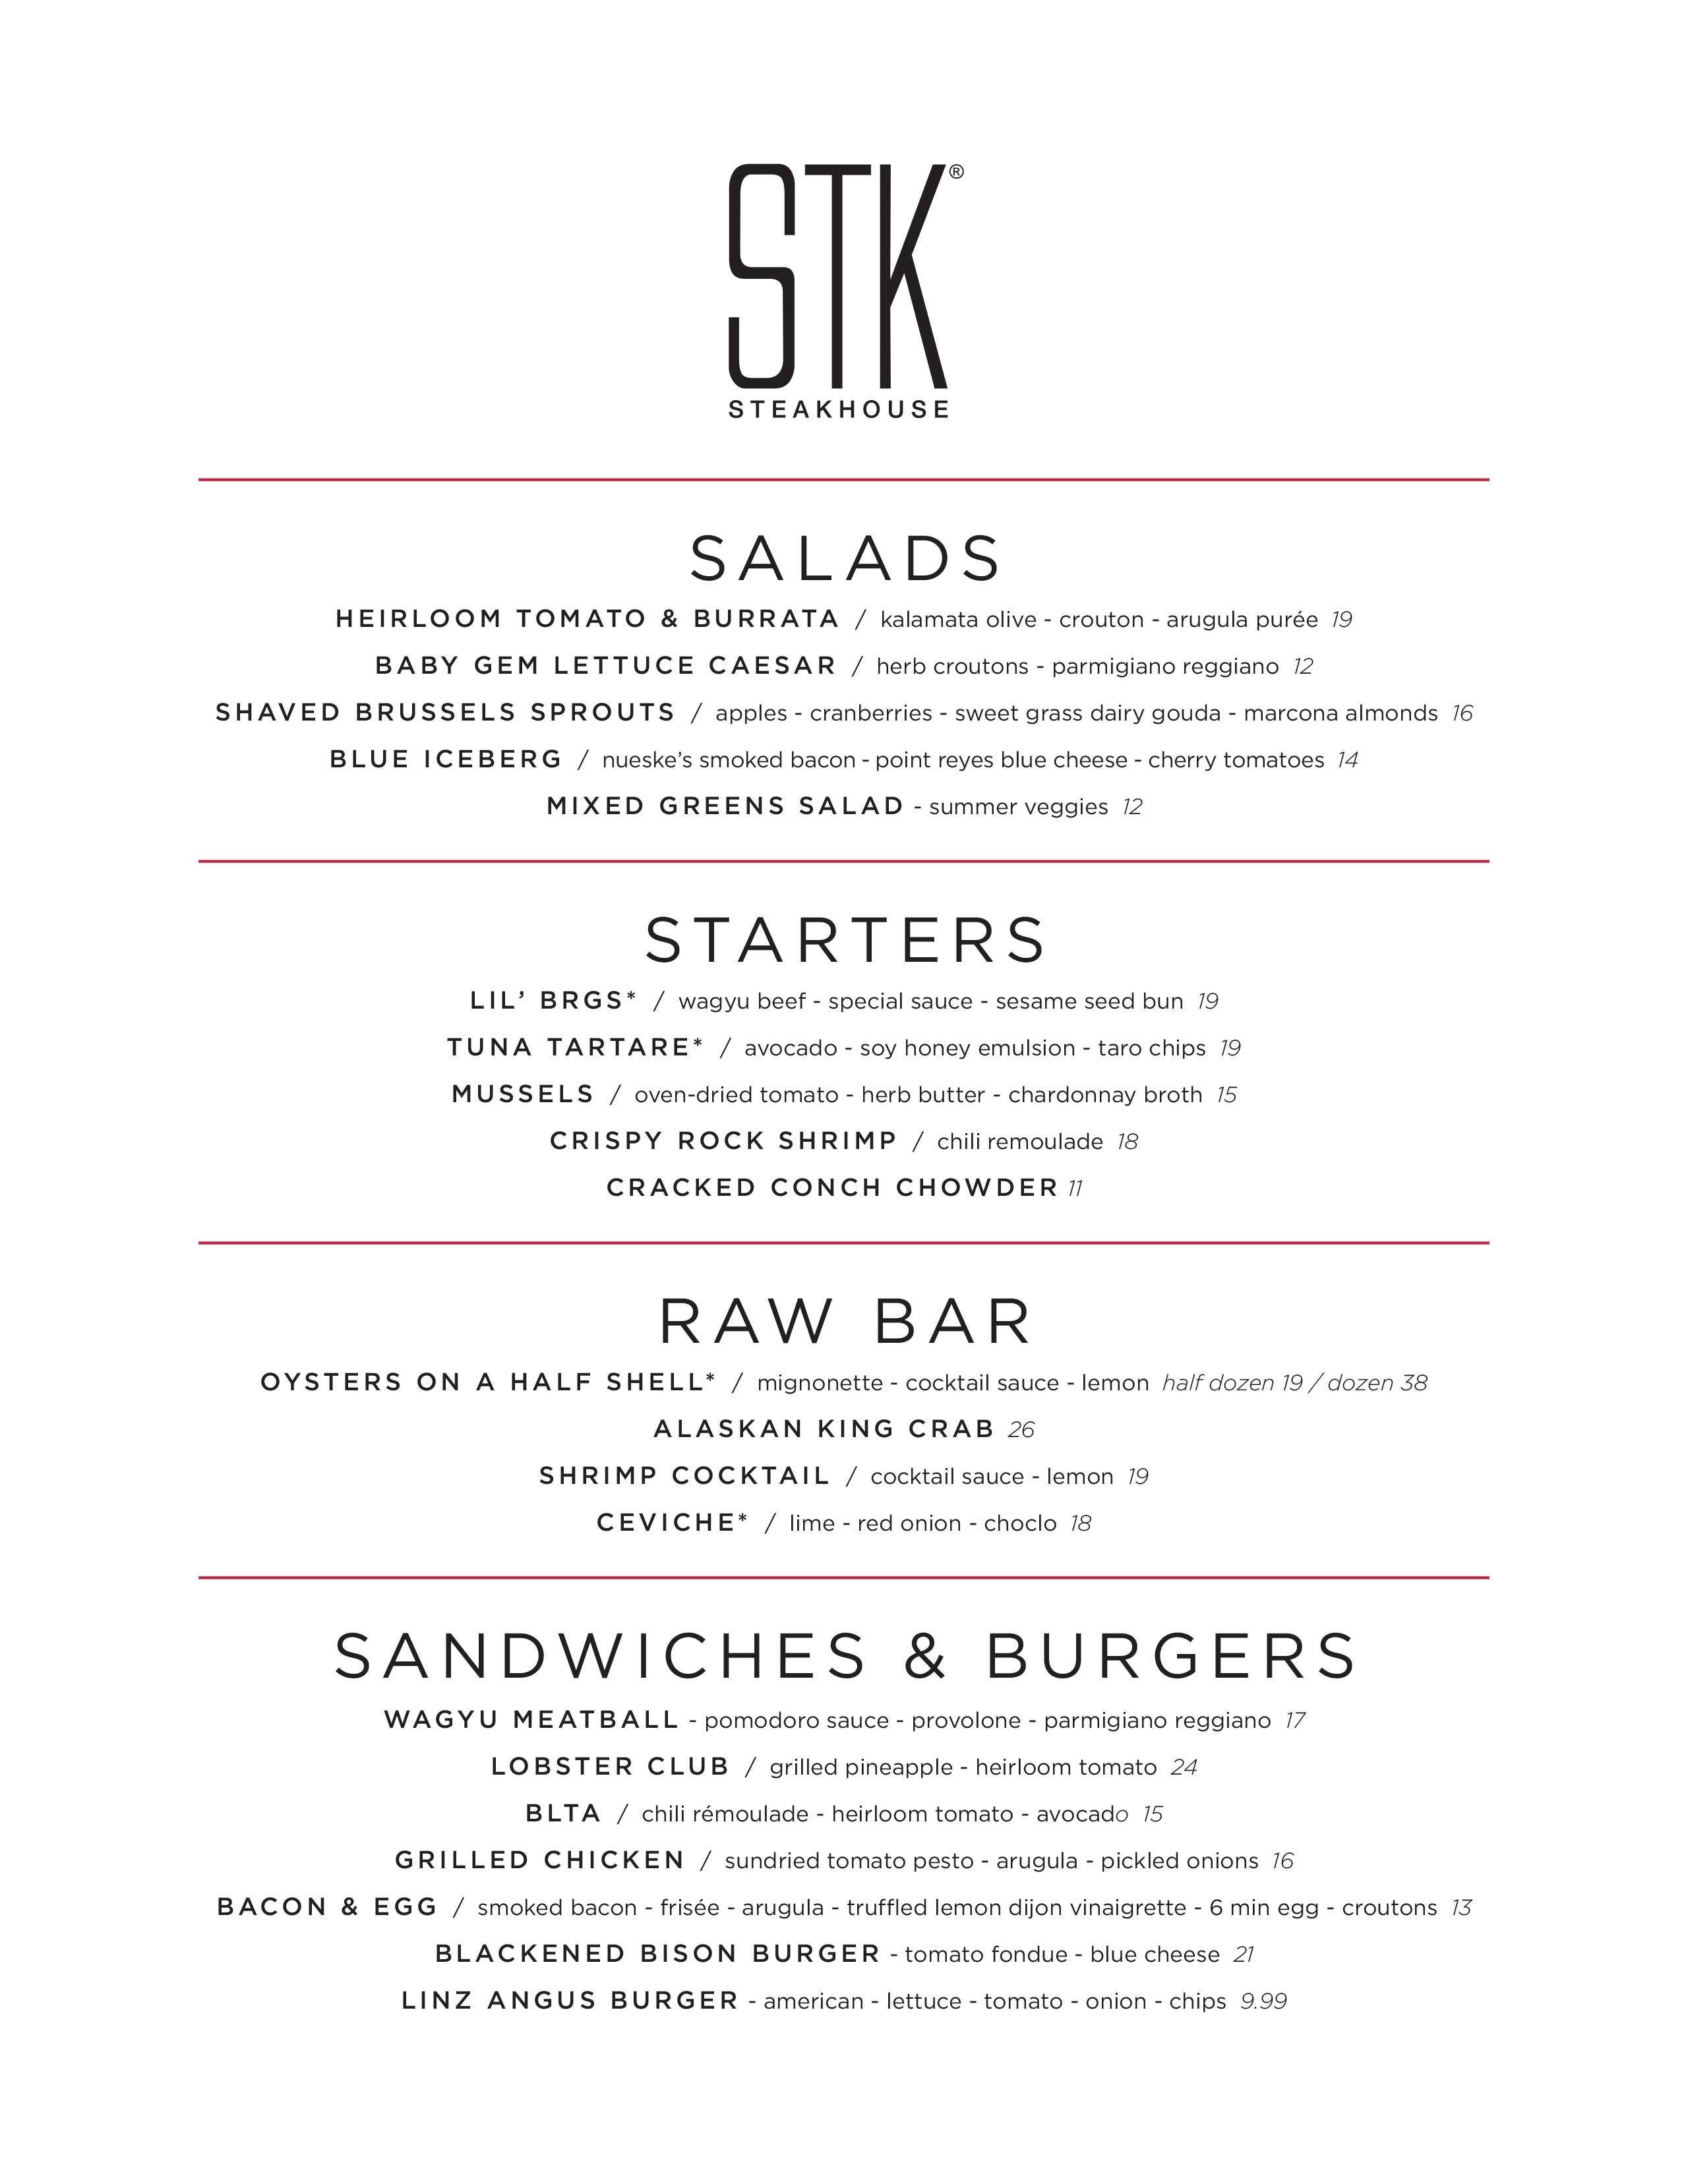 STK Orlando lunch menu